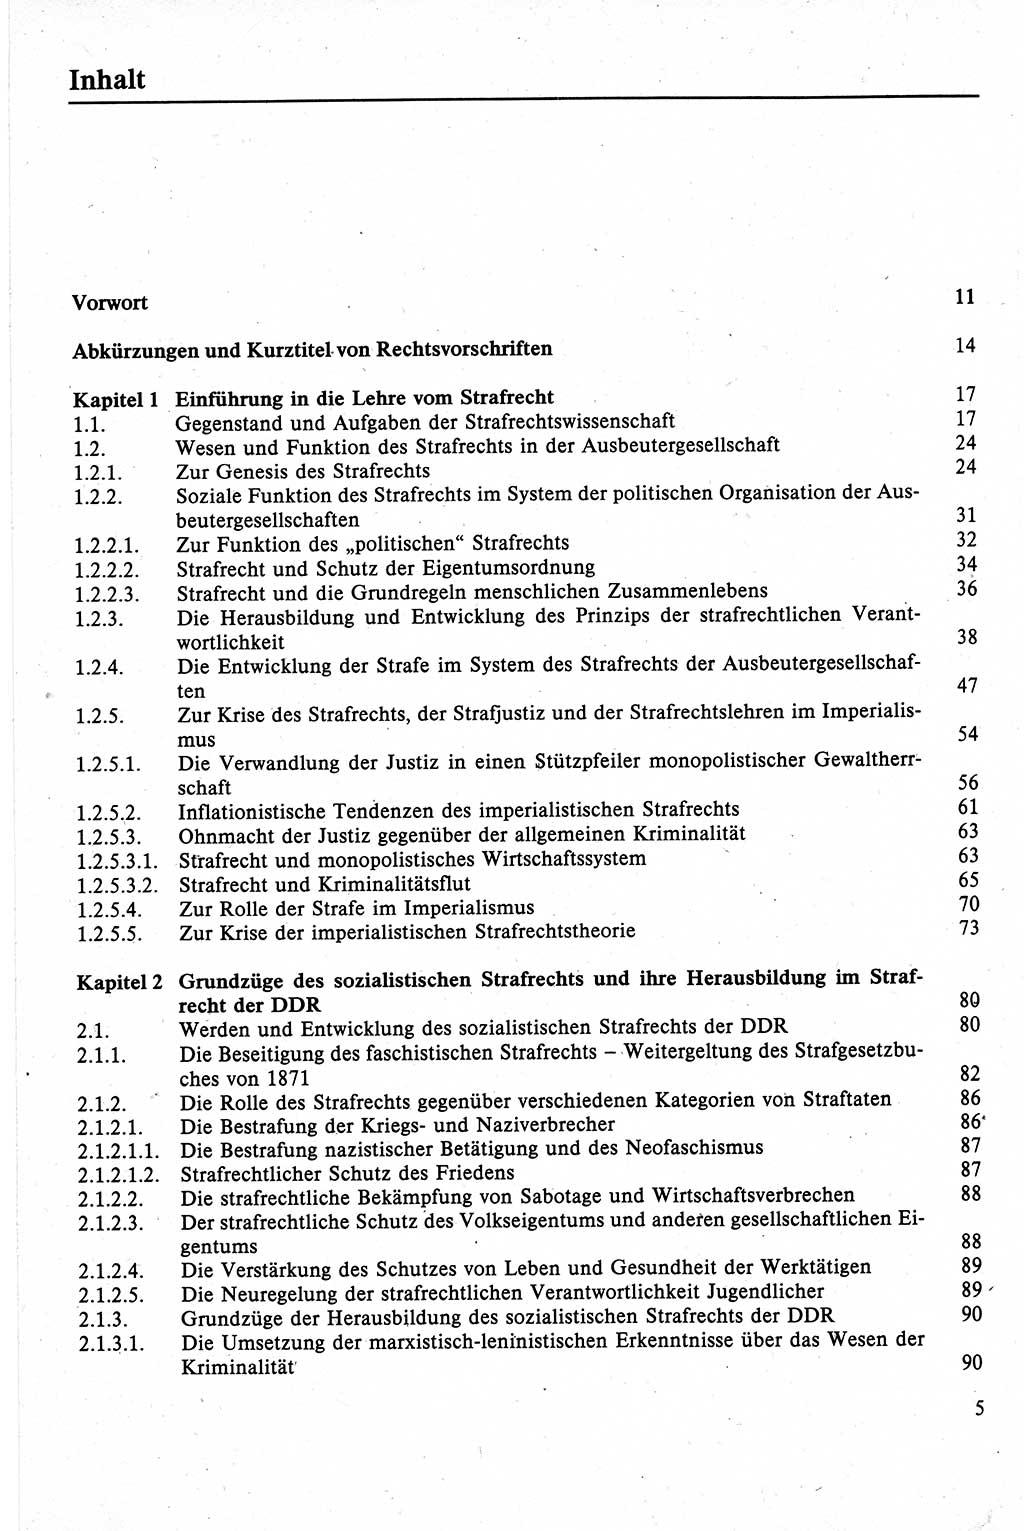 Strafrecht der DDR (Deutsche Demokratische Republik), Lehrbuch 1988, Seite 5 (Strafr. DDR Lb. 1988, S. 5)